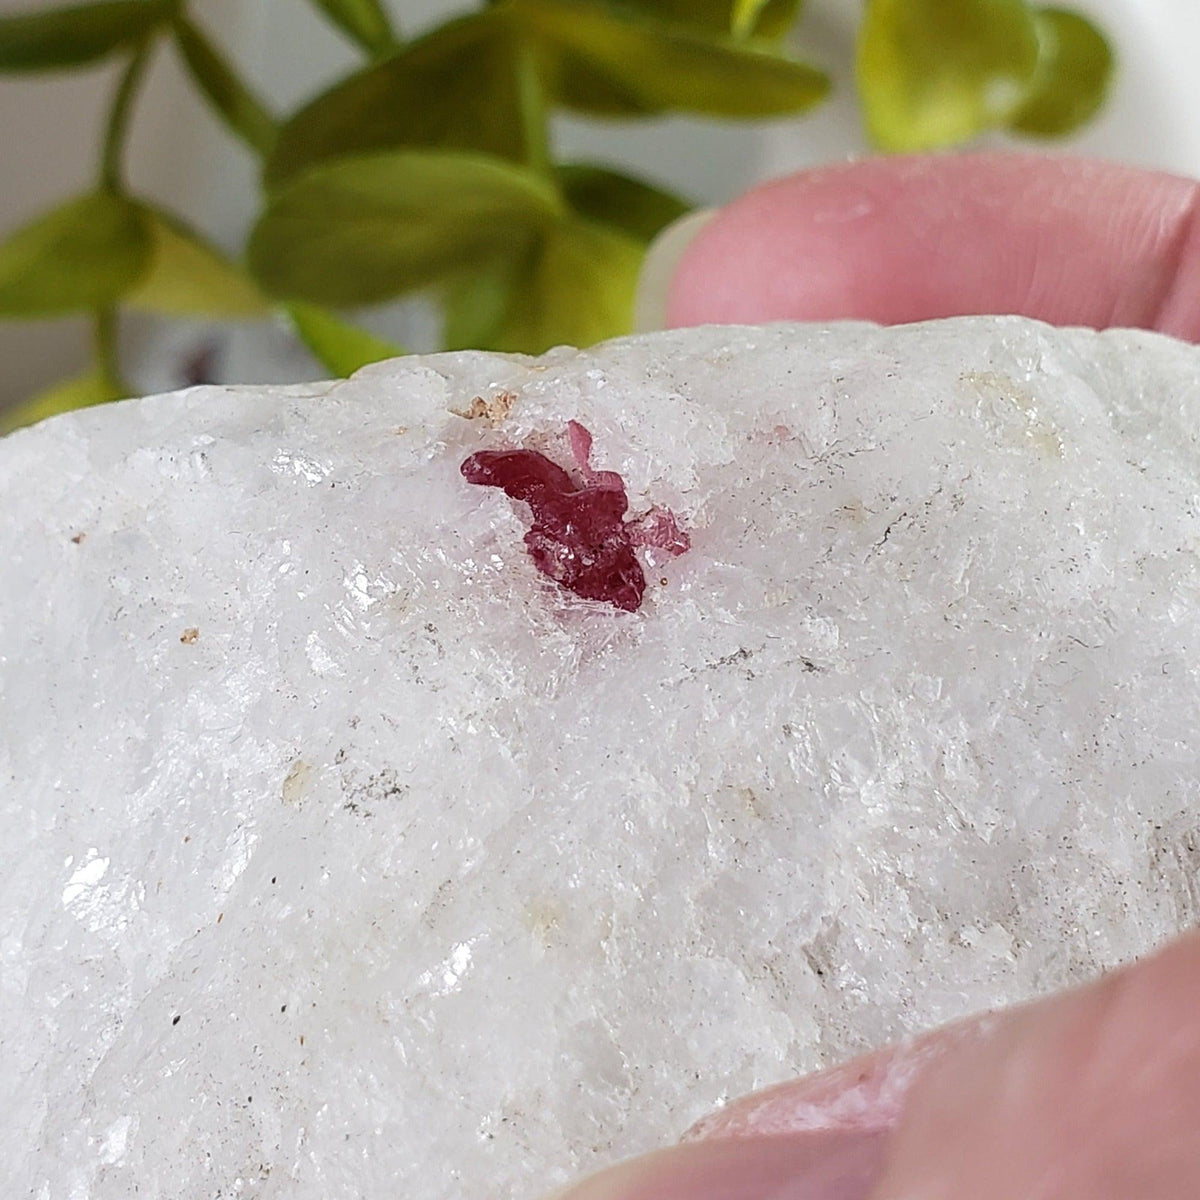 Spinel Crystal in Marble Host | Red Spinel | 172.2 gr, 860.9 ct | Mogok, Myanmar